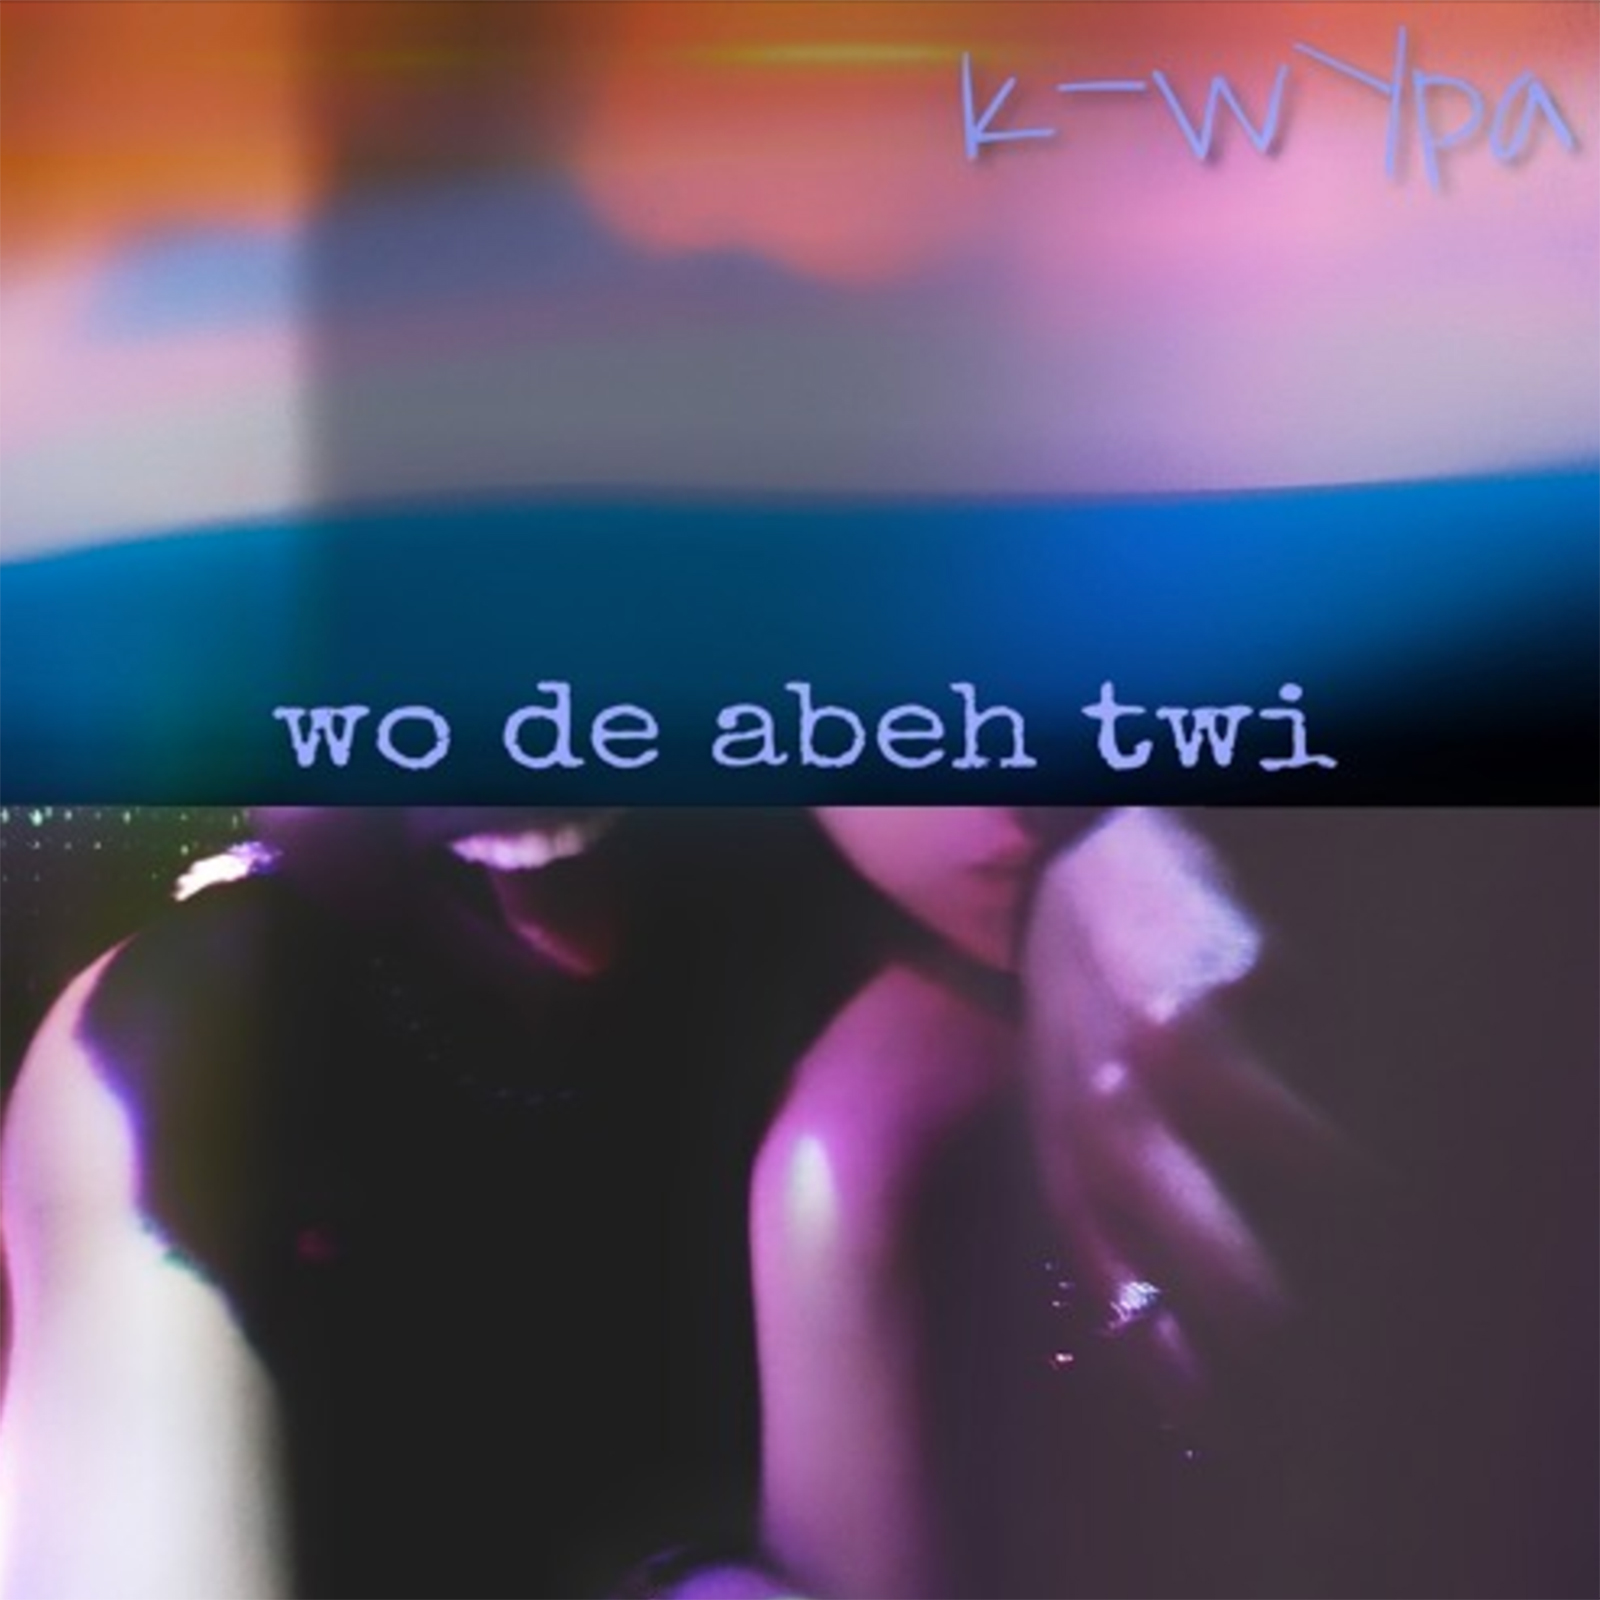 Wo De Abeh Twi by K-wYpa